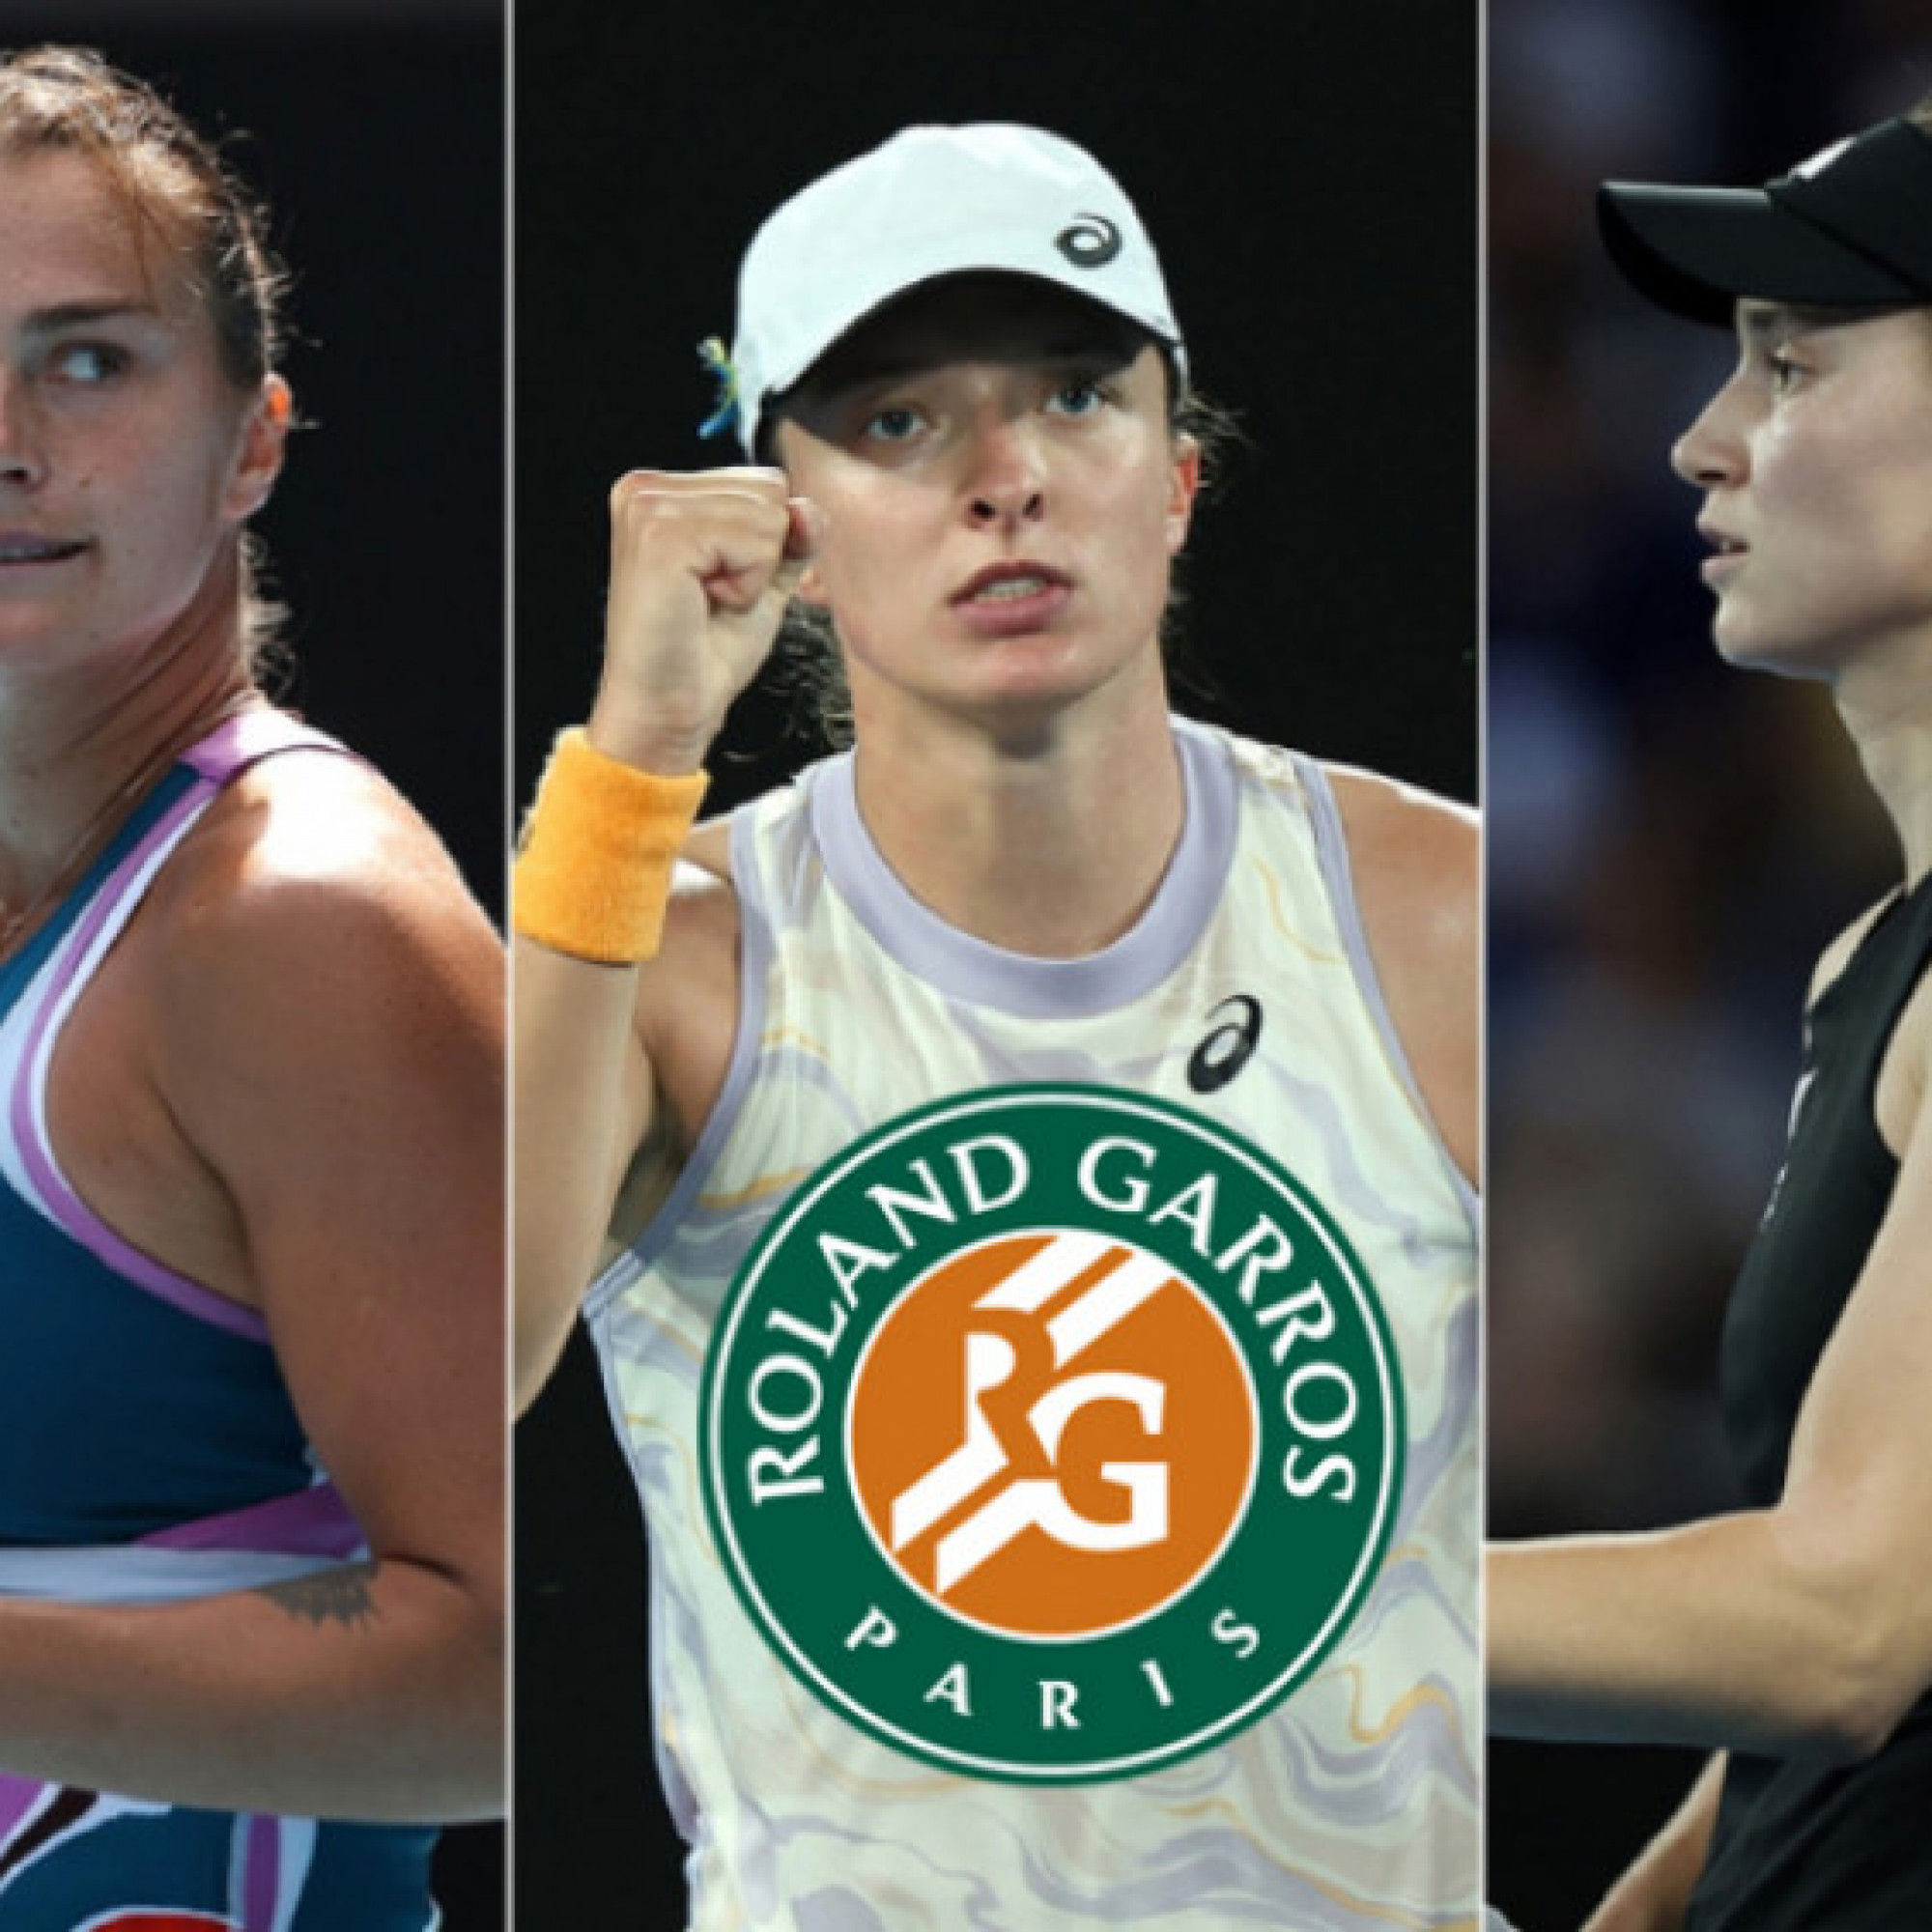 Thể thao - Kết quả thi đấu đơn nữ giải tennis Roland Garros 2023